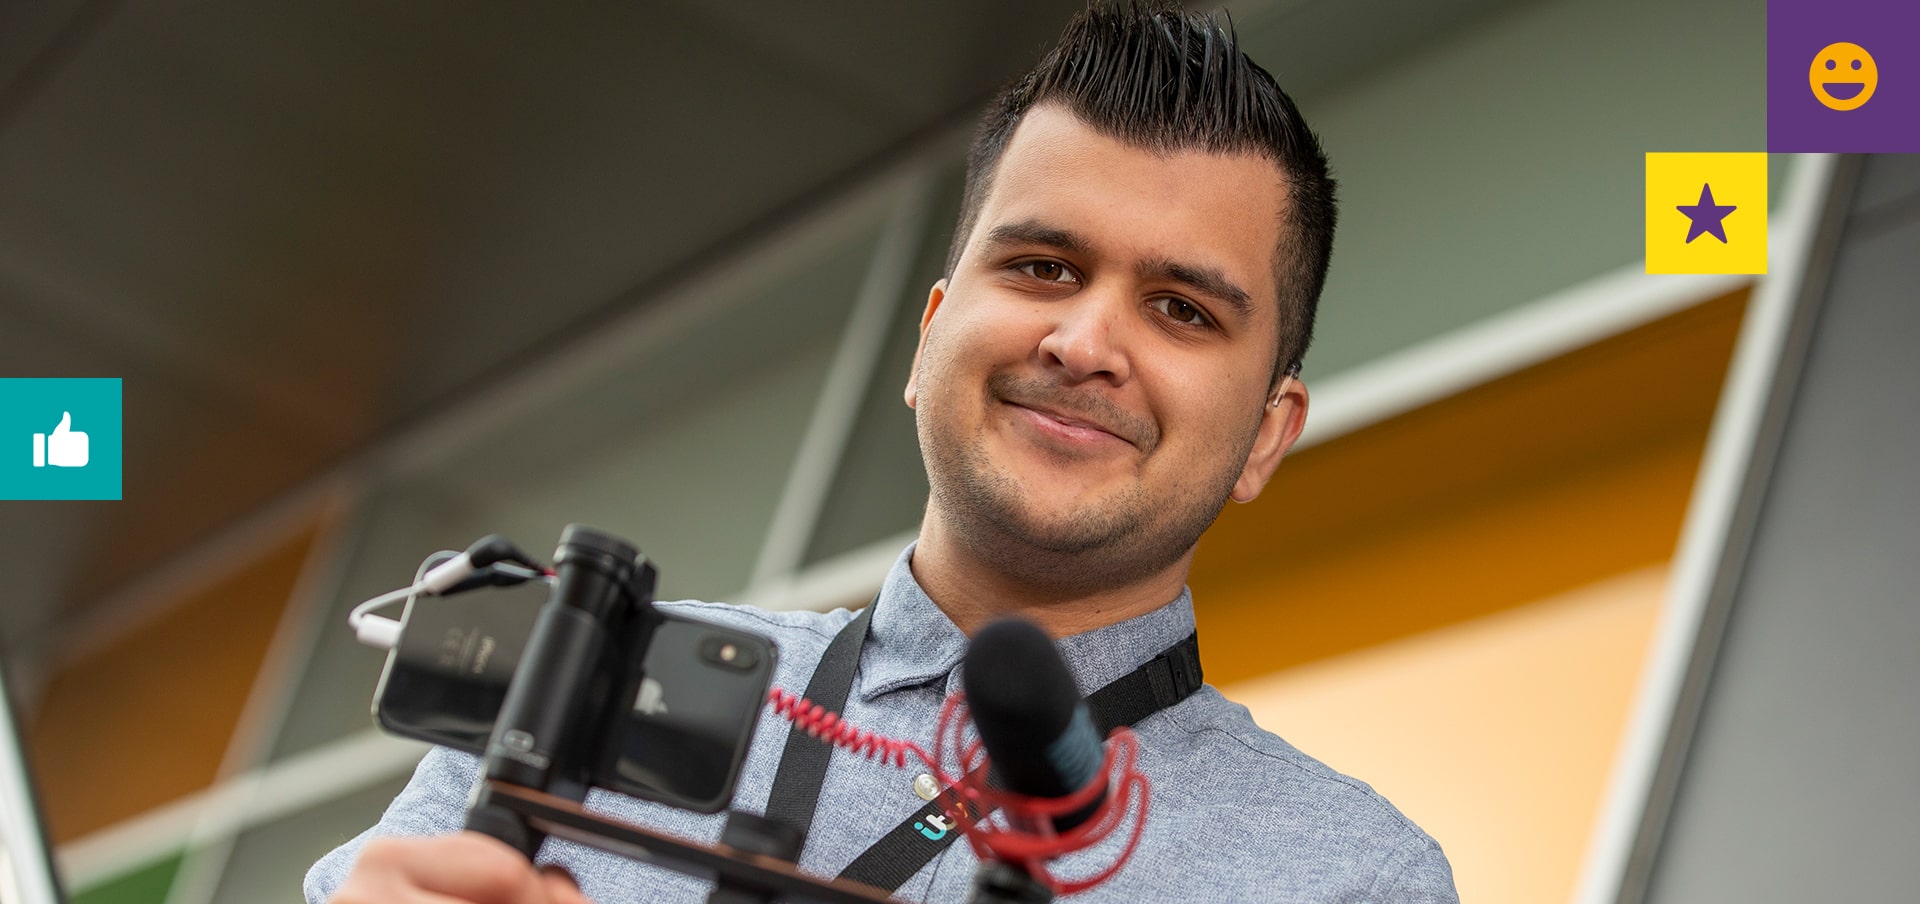 Creative apprentice Safyan holding a camera